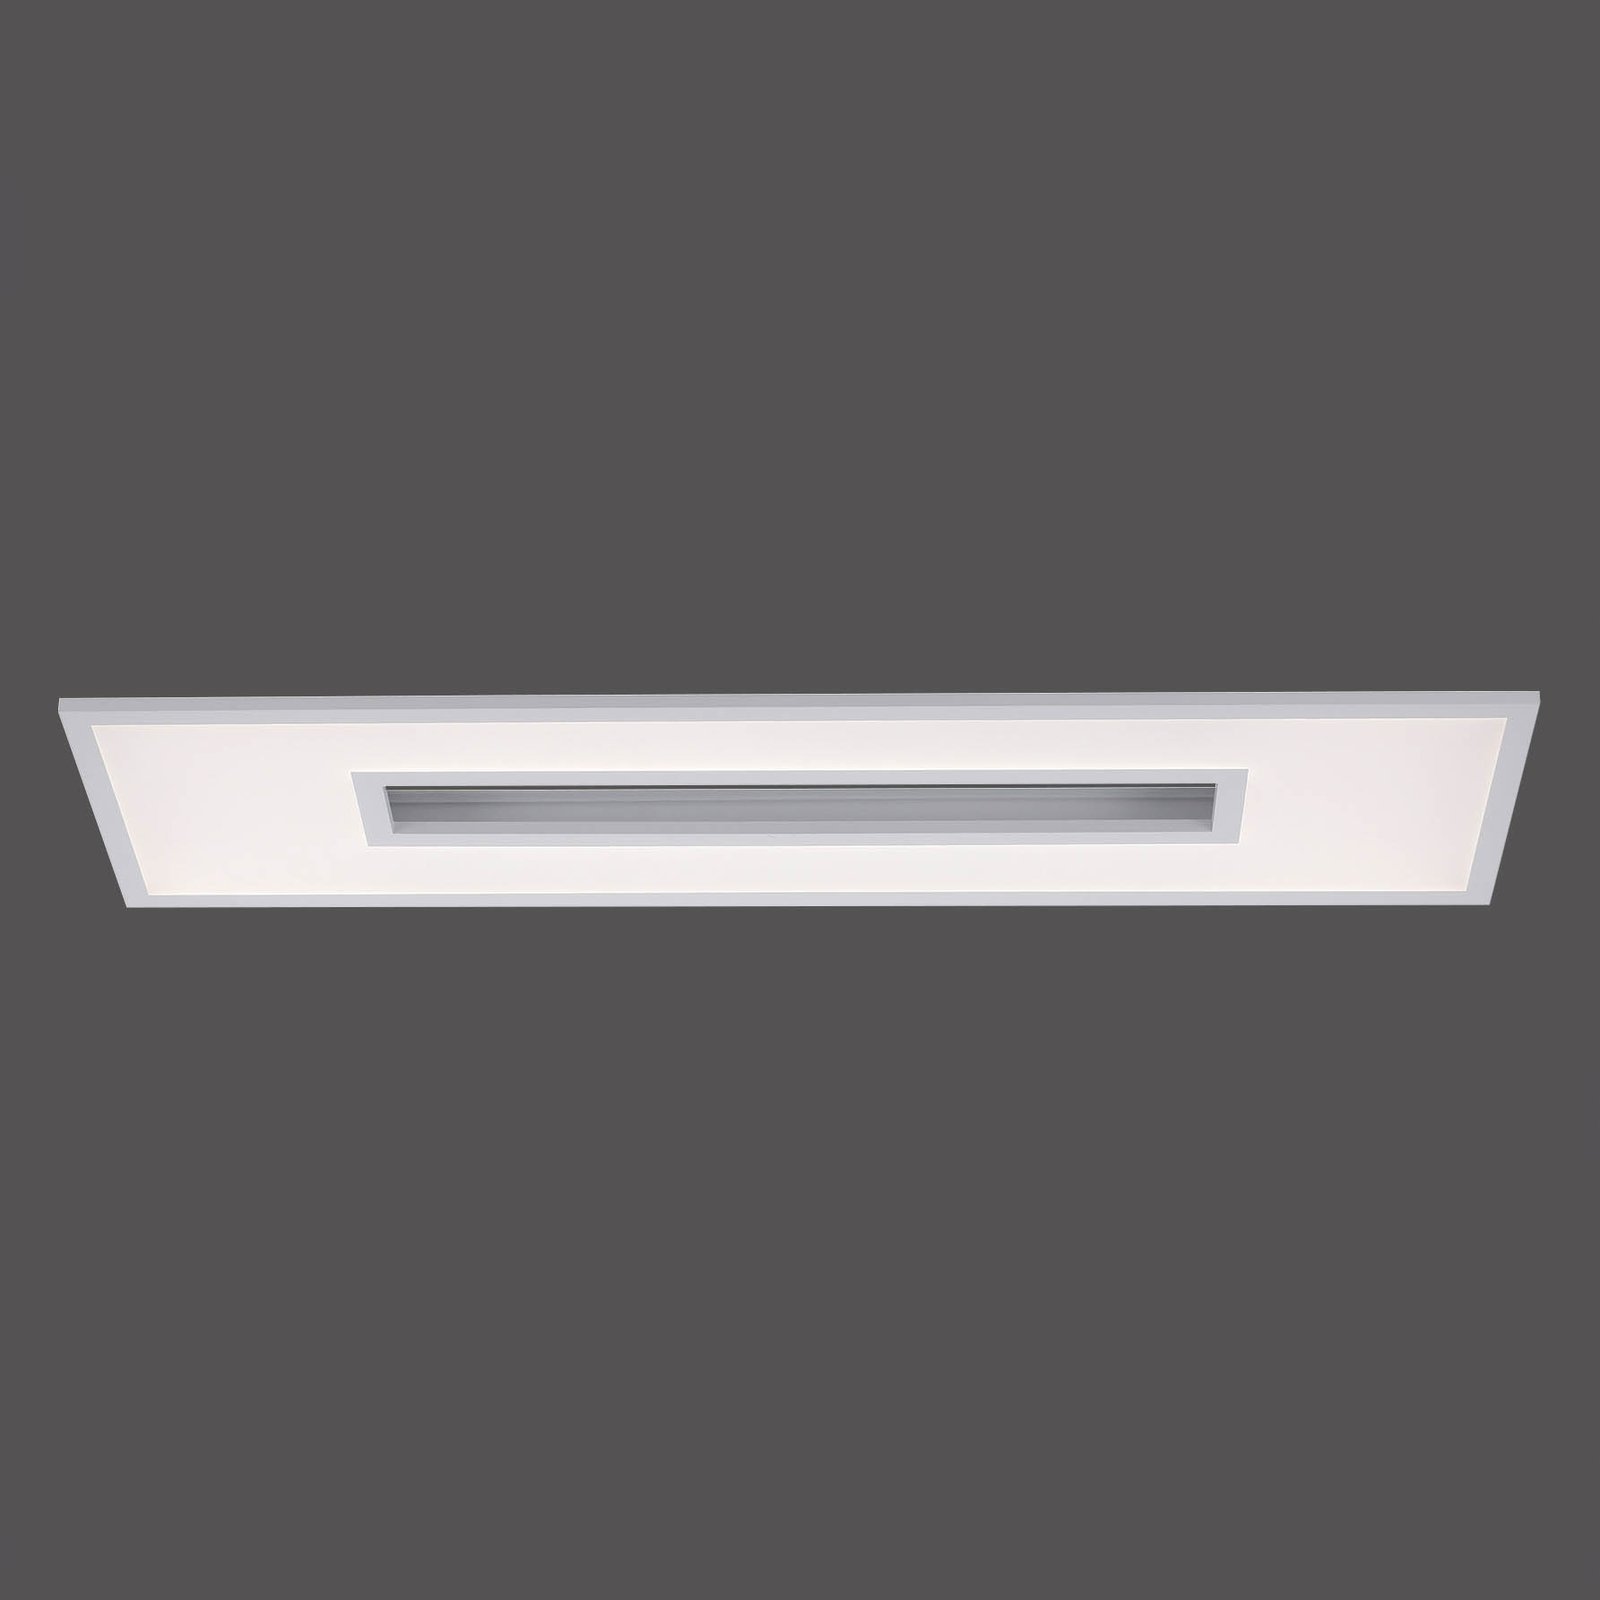 LED plafondlamp Recess, rechthoekig, RGBW dimbaar